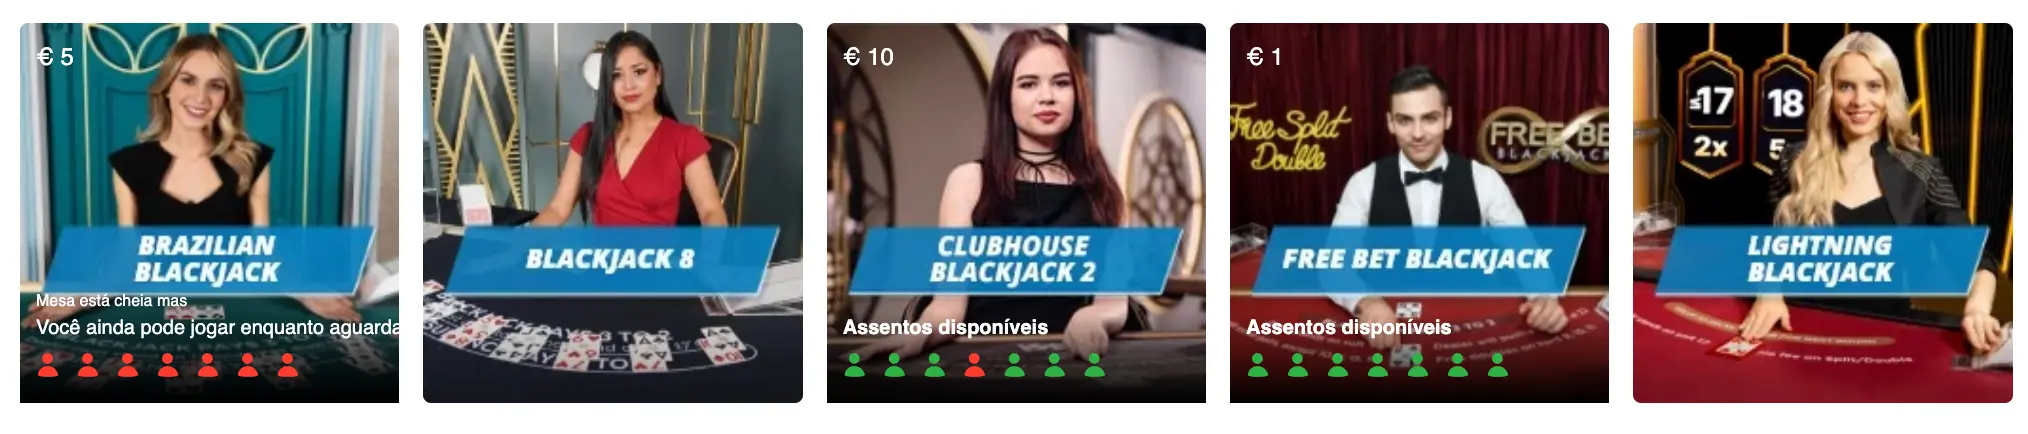 Blackjack no SportingBet Casino